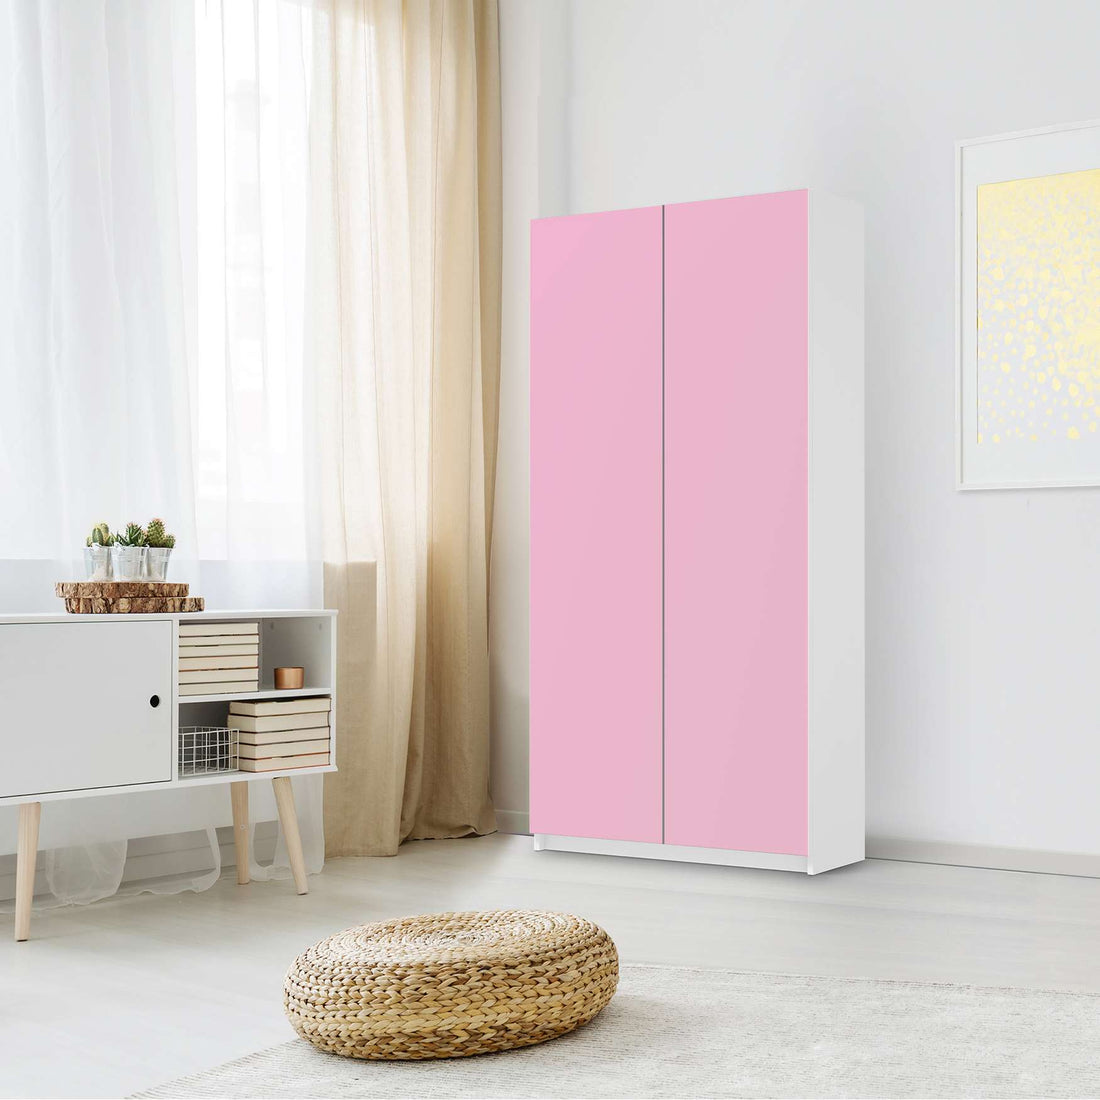 Klebefolie für Möbel Pink Light - IKEA Pax Schrank 201 cm Höhe - 2 Türen - Schlafzimmer